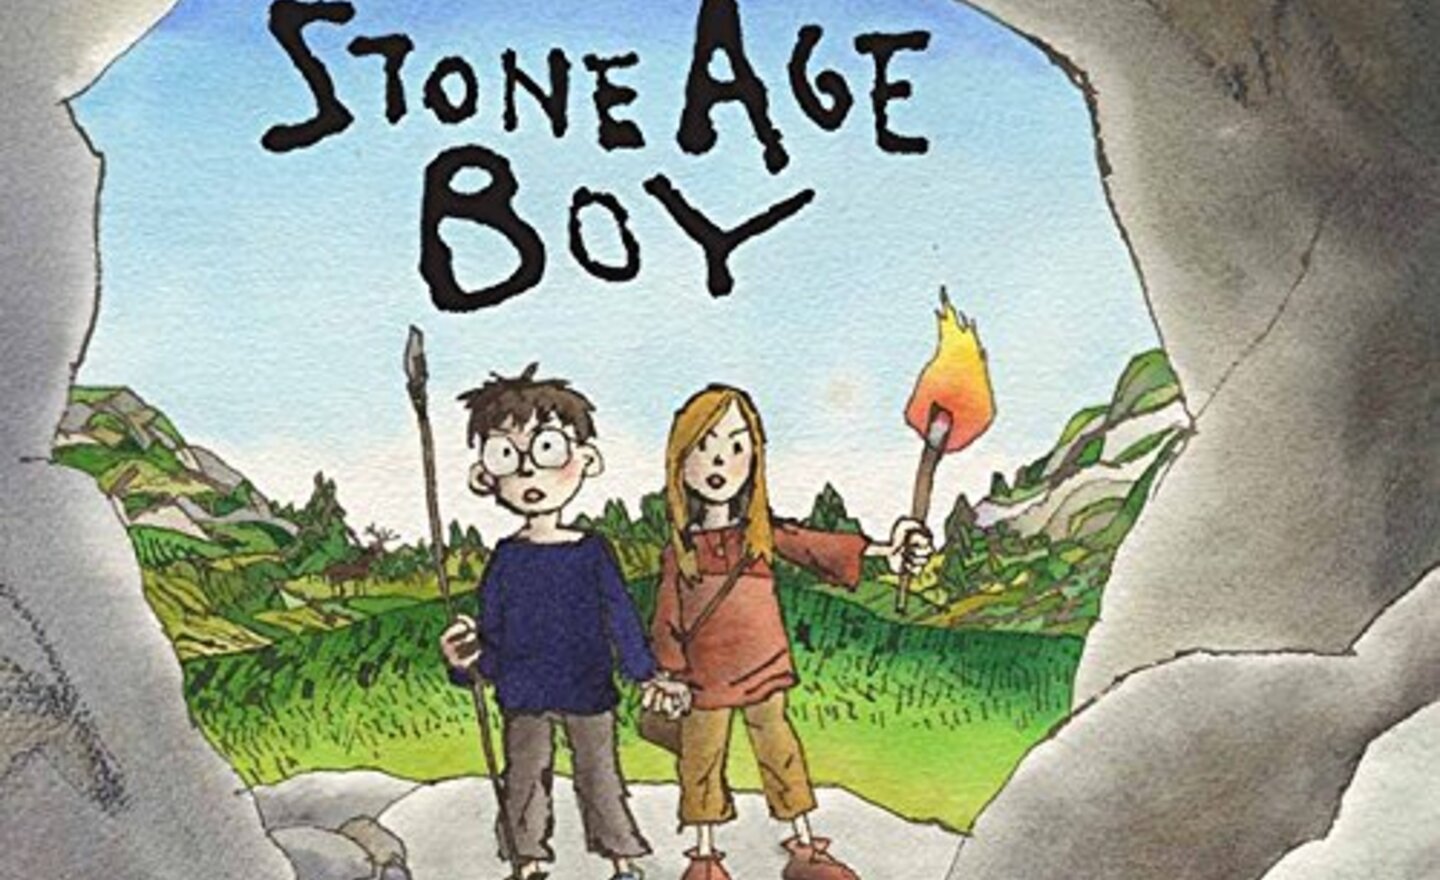 Image of Stone Age Boy